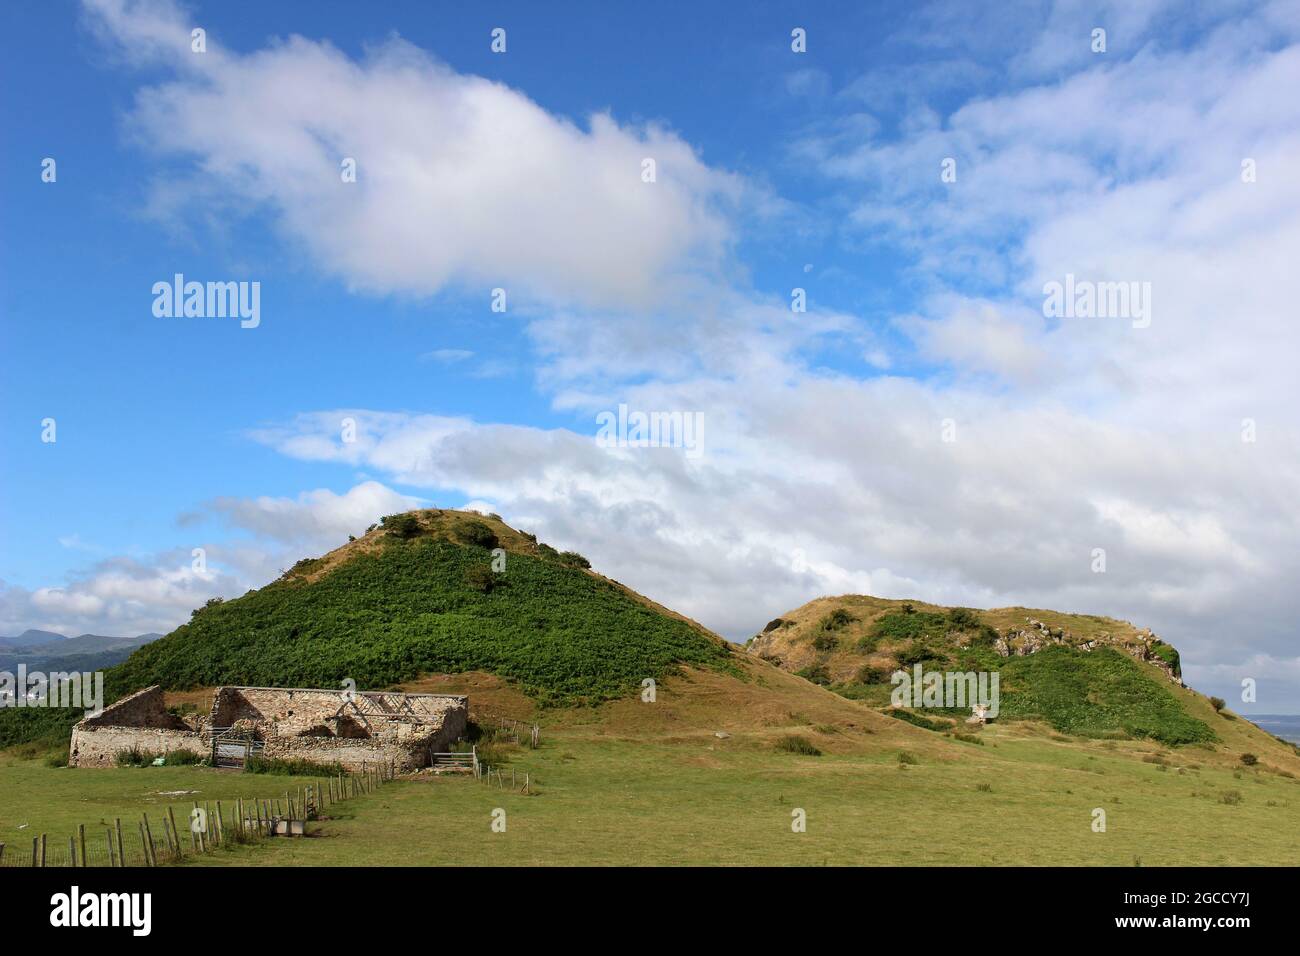 The Vardre Two Volcanic Plugs - der Ort für das mittelalterliche Deganwy Castle eine frühe Festung von Gwynedd, die an der Mündung des Flusses Conwy, Wales liegt Stockfoto